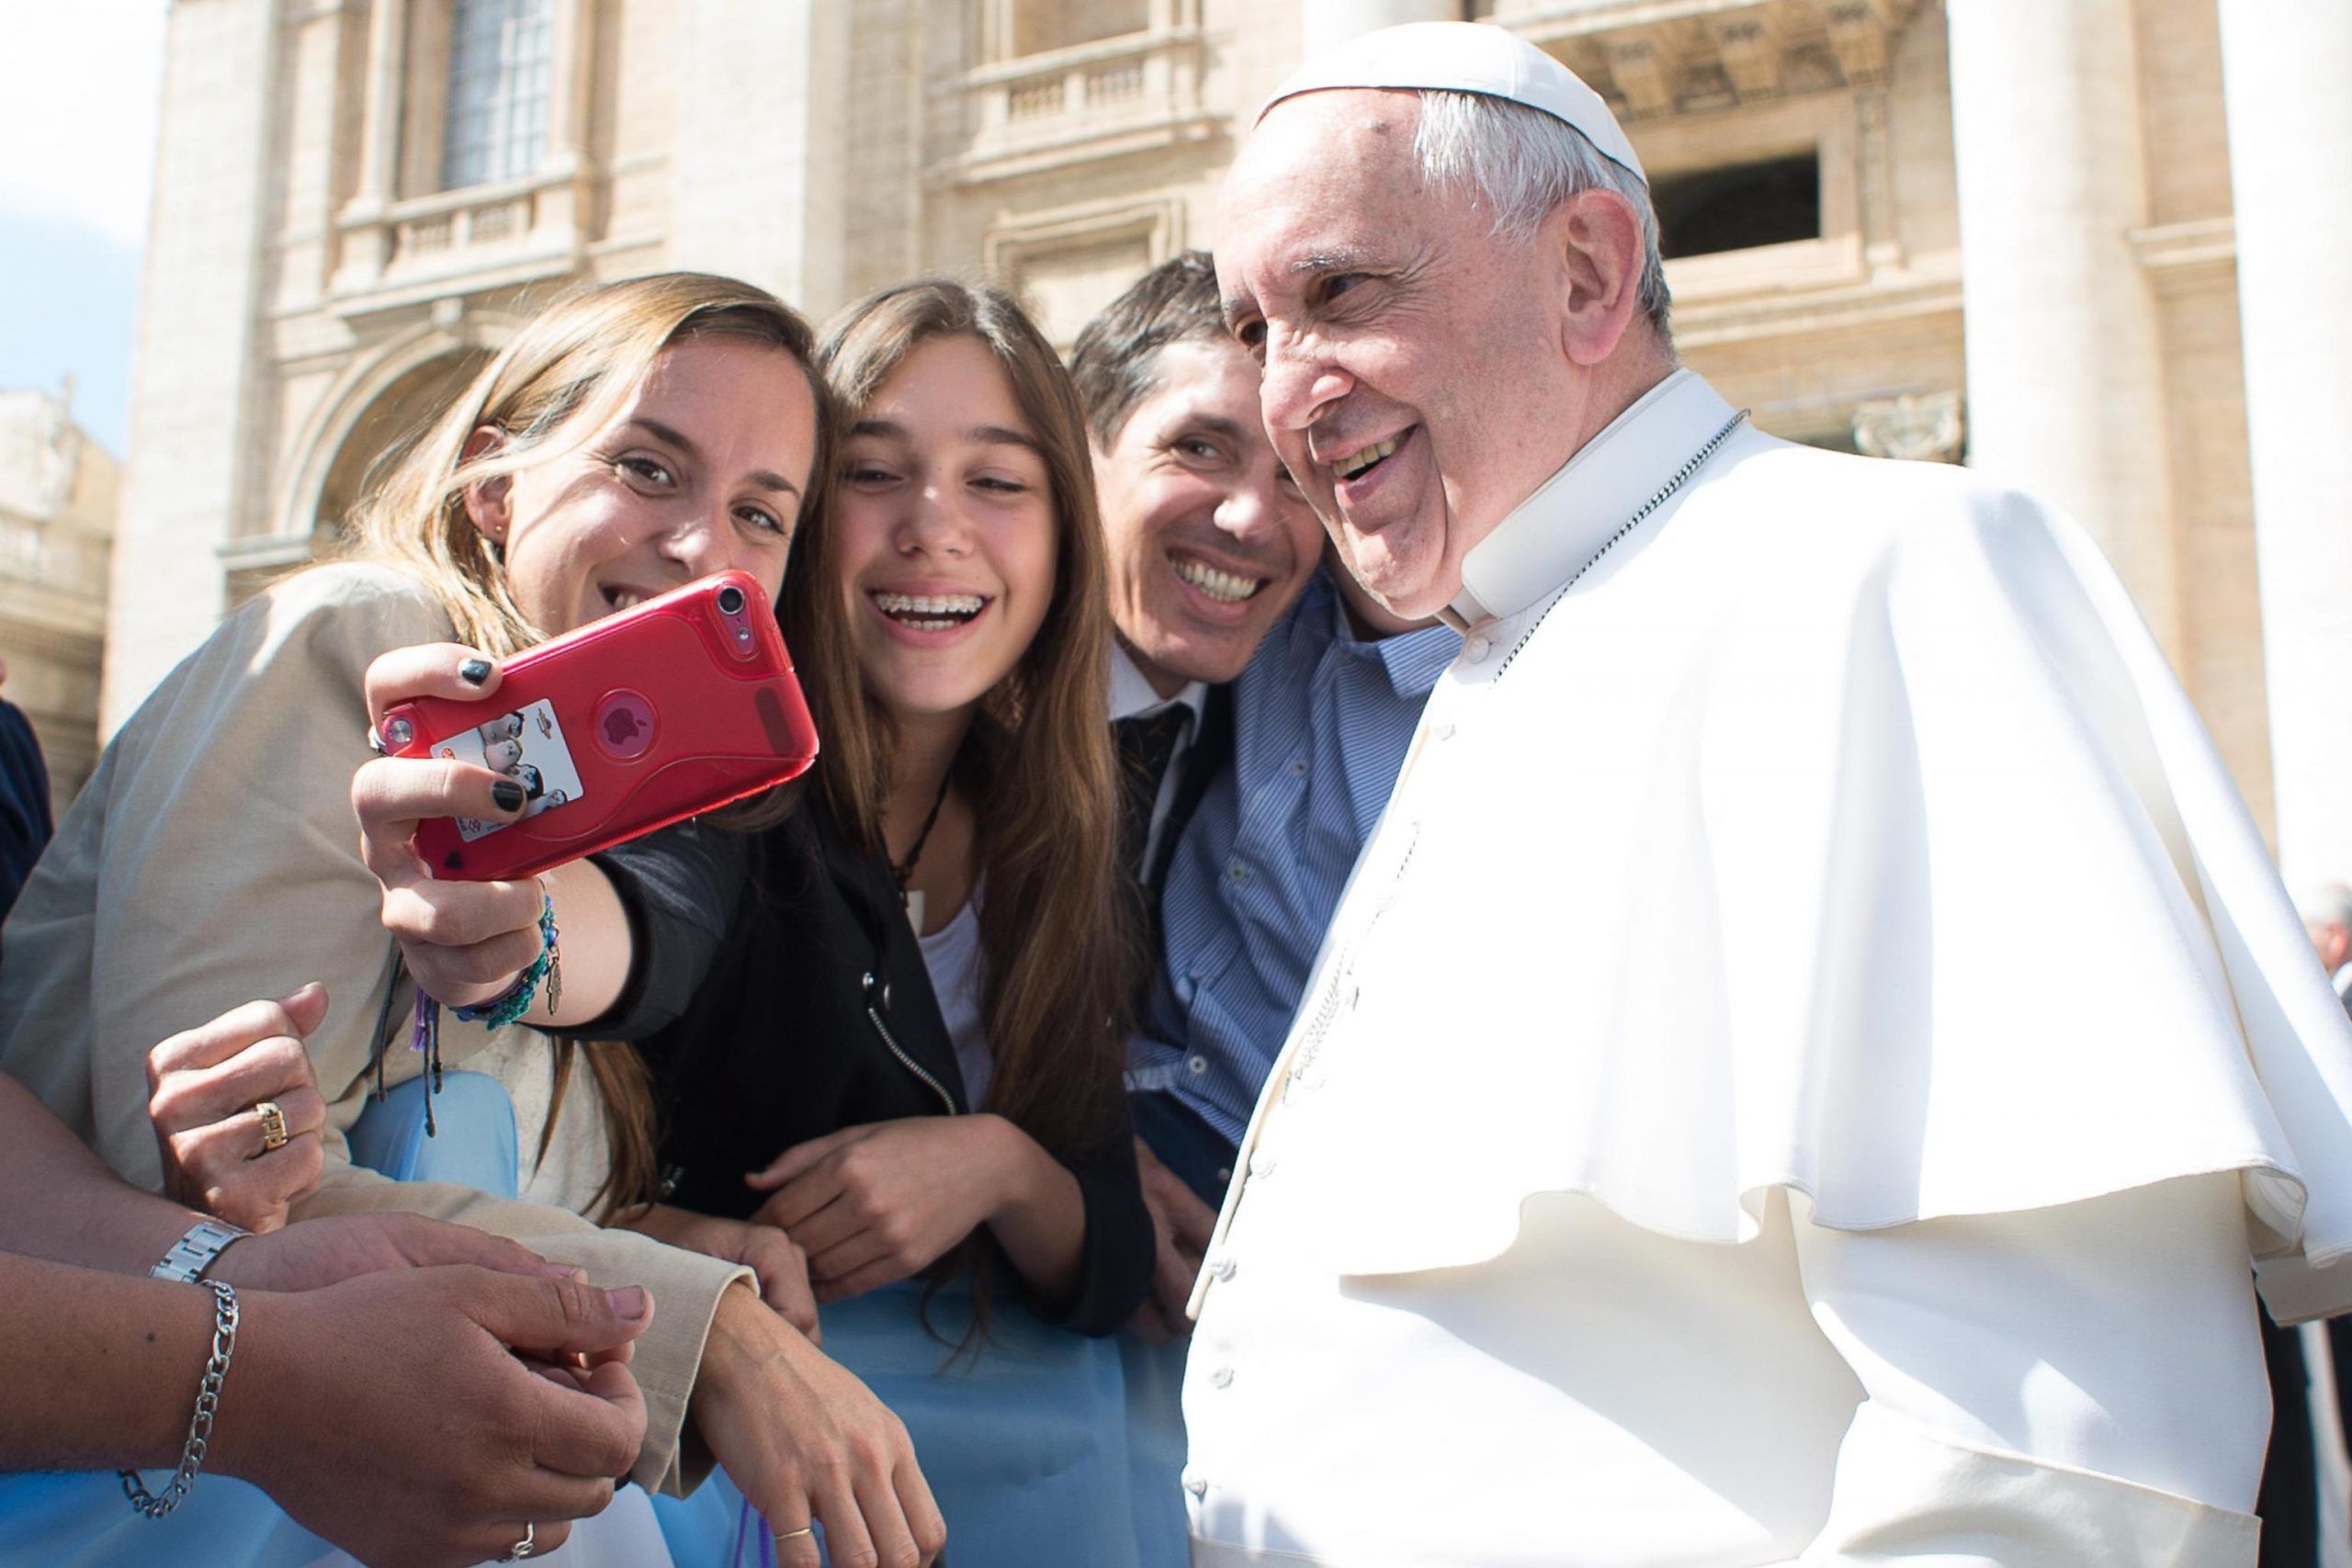 Papa Francesceo preoccupato per i giovani 'Troppi selfie, non gli interessa stringermi la mano'